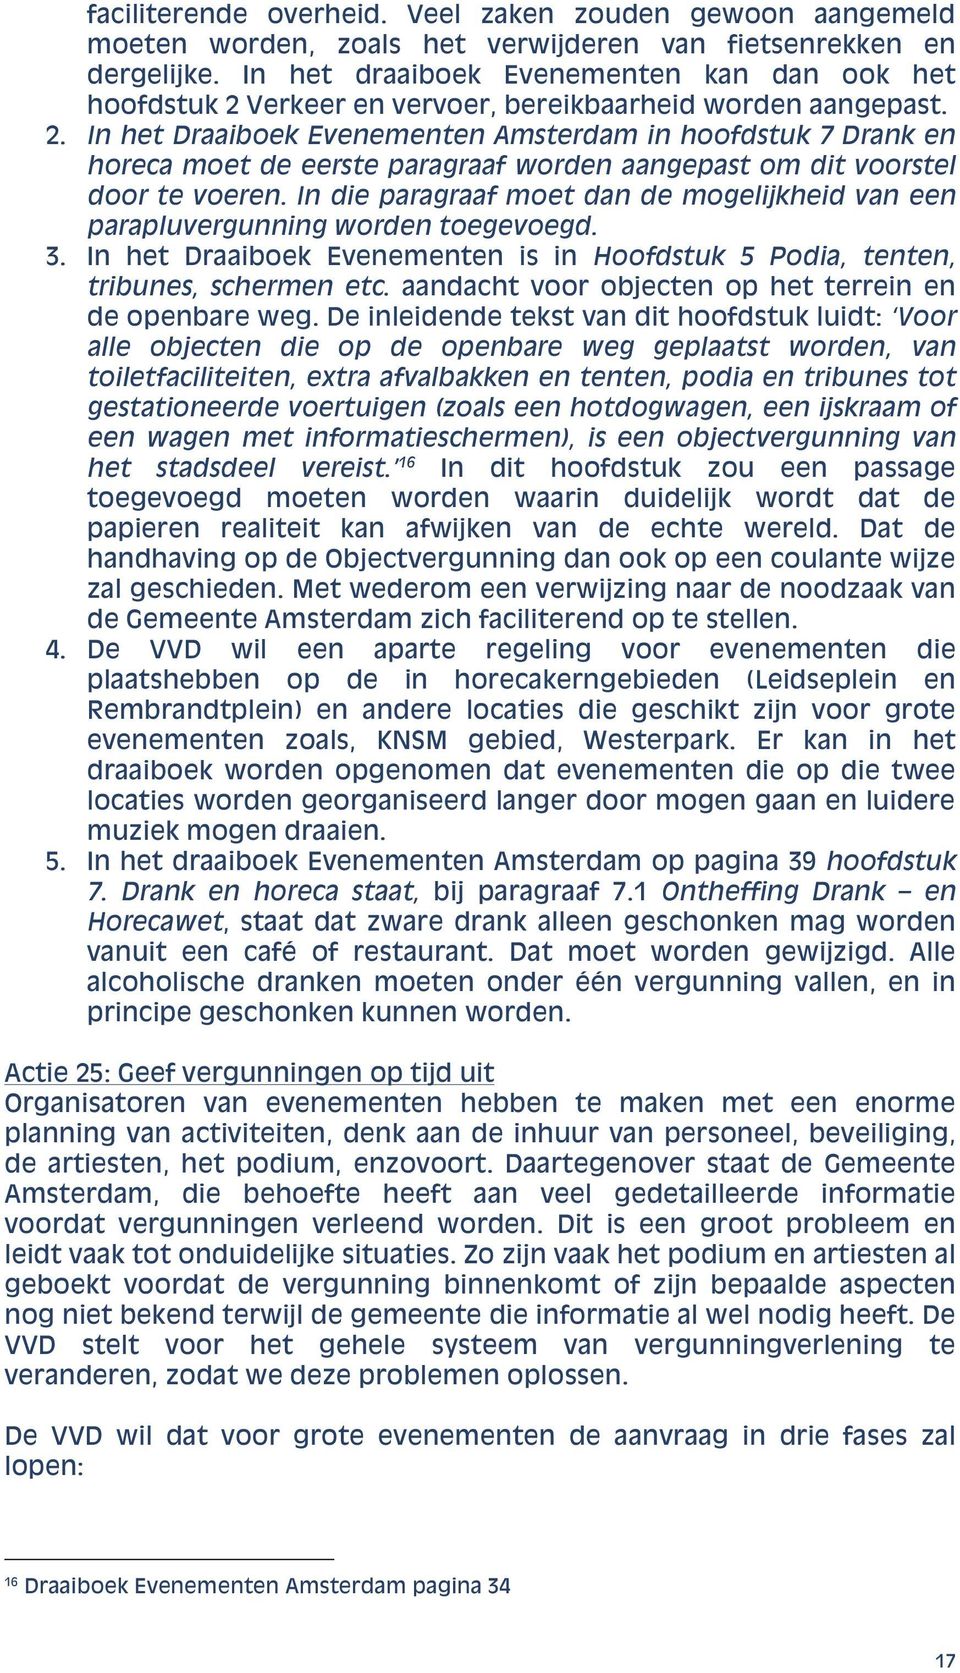 Verkeer en vervoer, bereikbaarheid worden aangepast. 2. In het Draaiboek Evenementen Amsterdam in hoofdstuk 7 Drank en horeca moet de eerste paragraaf worden aangepast om dit voorstel door te voeren.